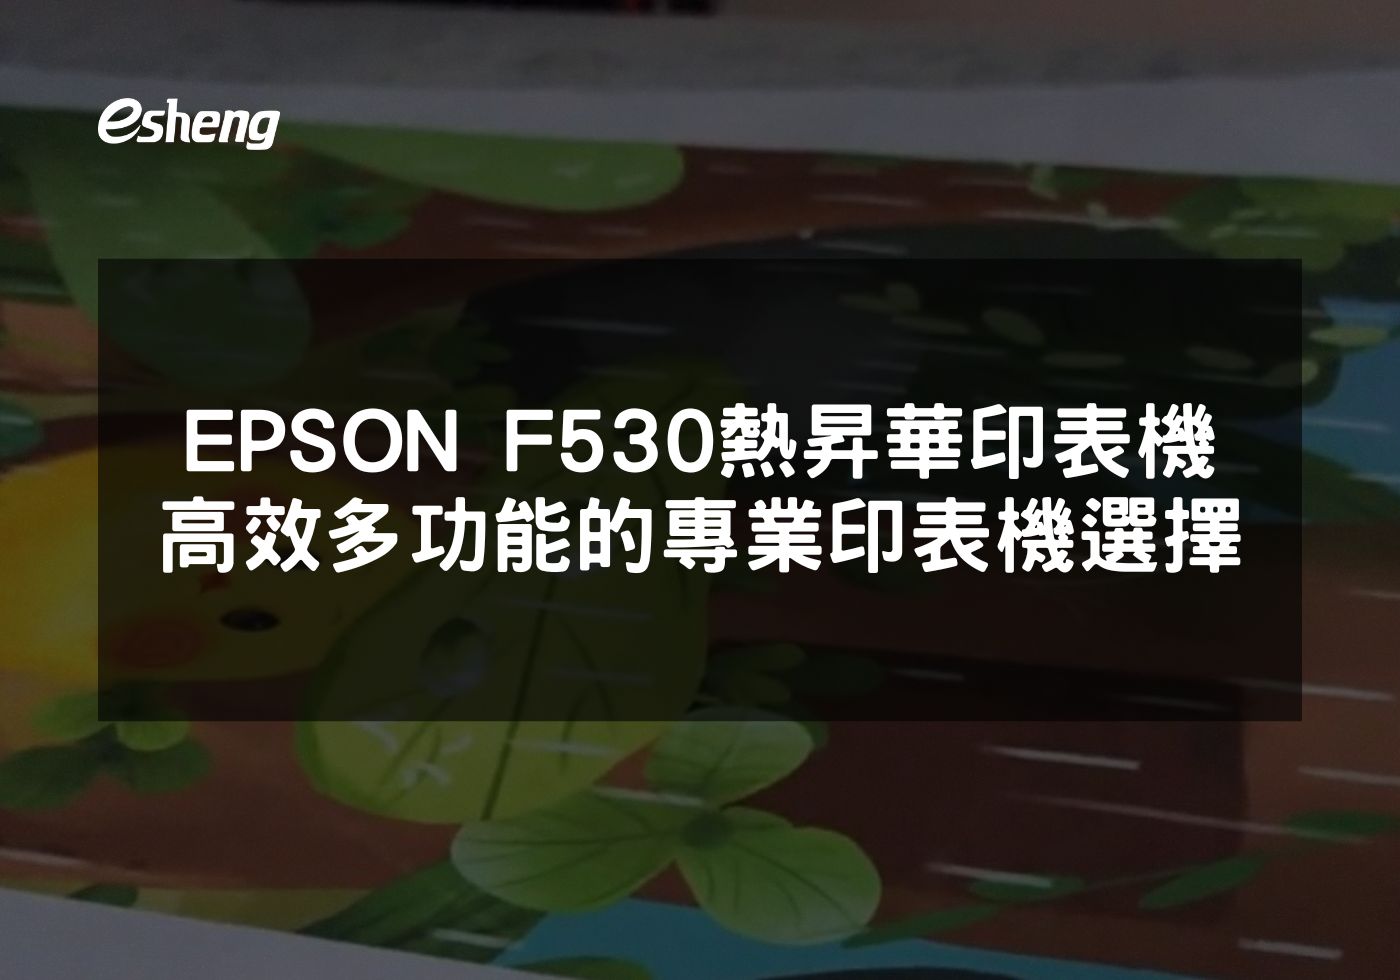 閱讀更多文章 EPSON F530熱昇華印表機 高效多功能的專業印表機選擇